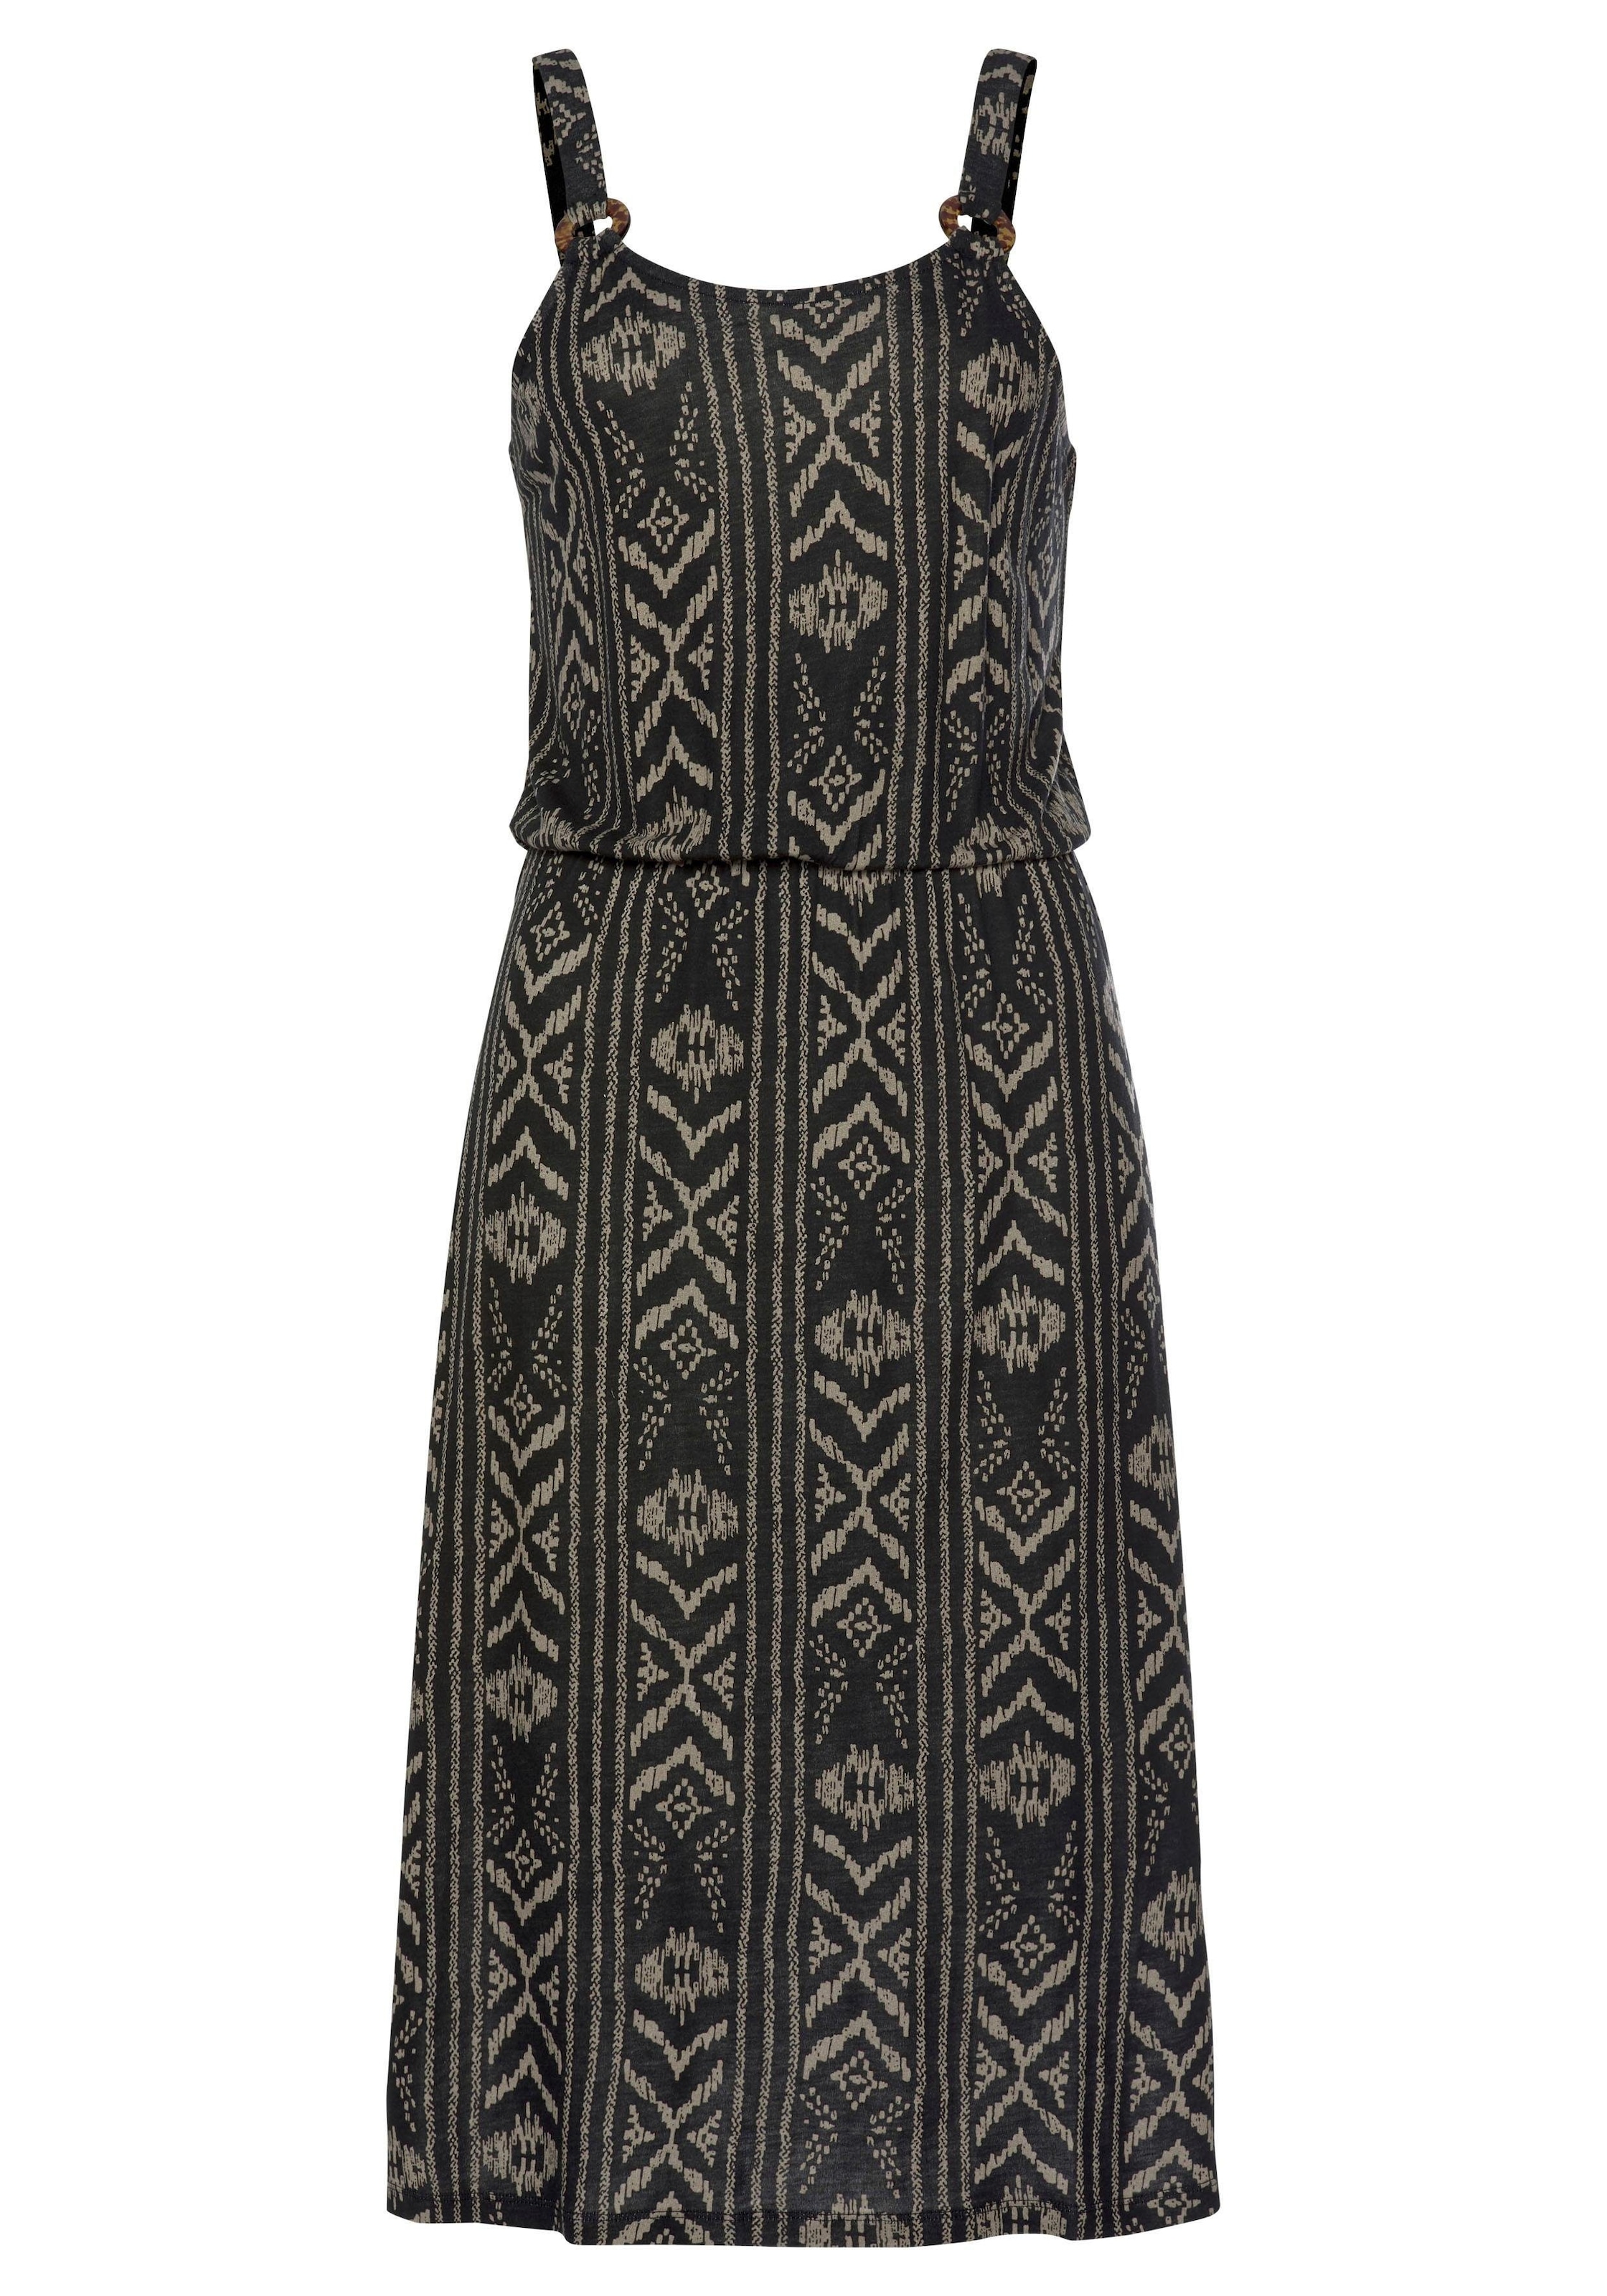 LASCANA Jerseykleid, mit Ringdetail am Träger, Sommerkleid im Alloverdruck, Strandkleid